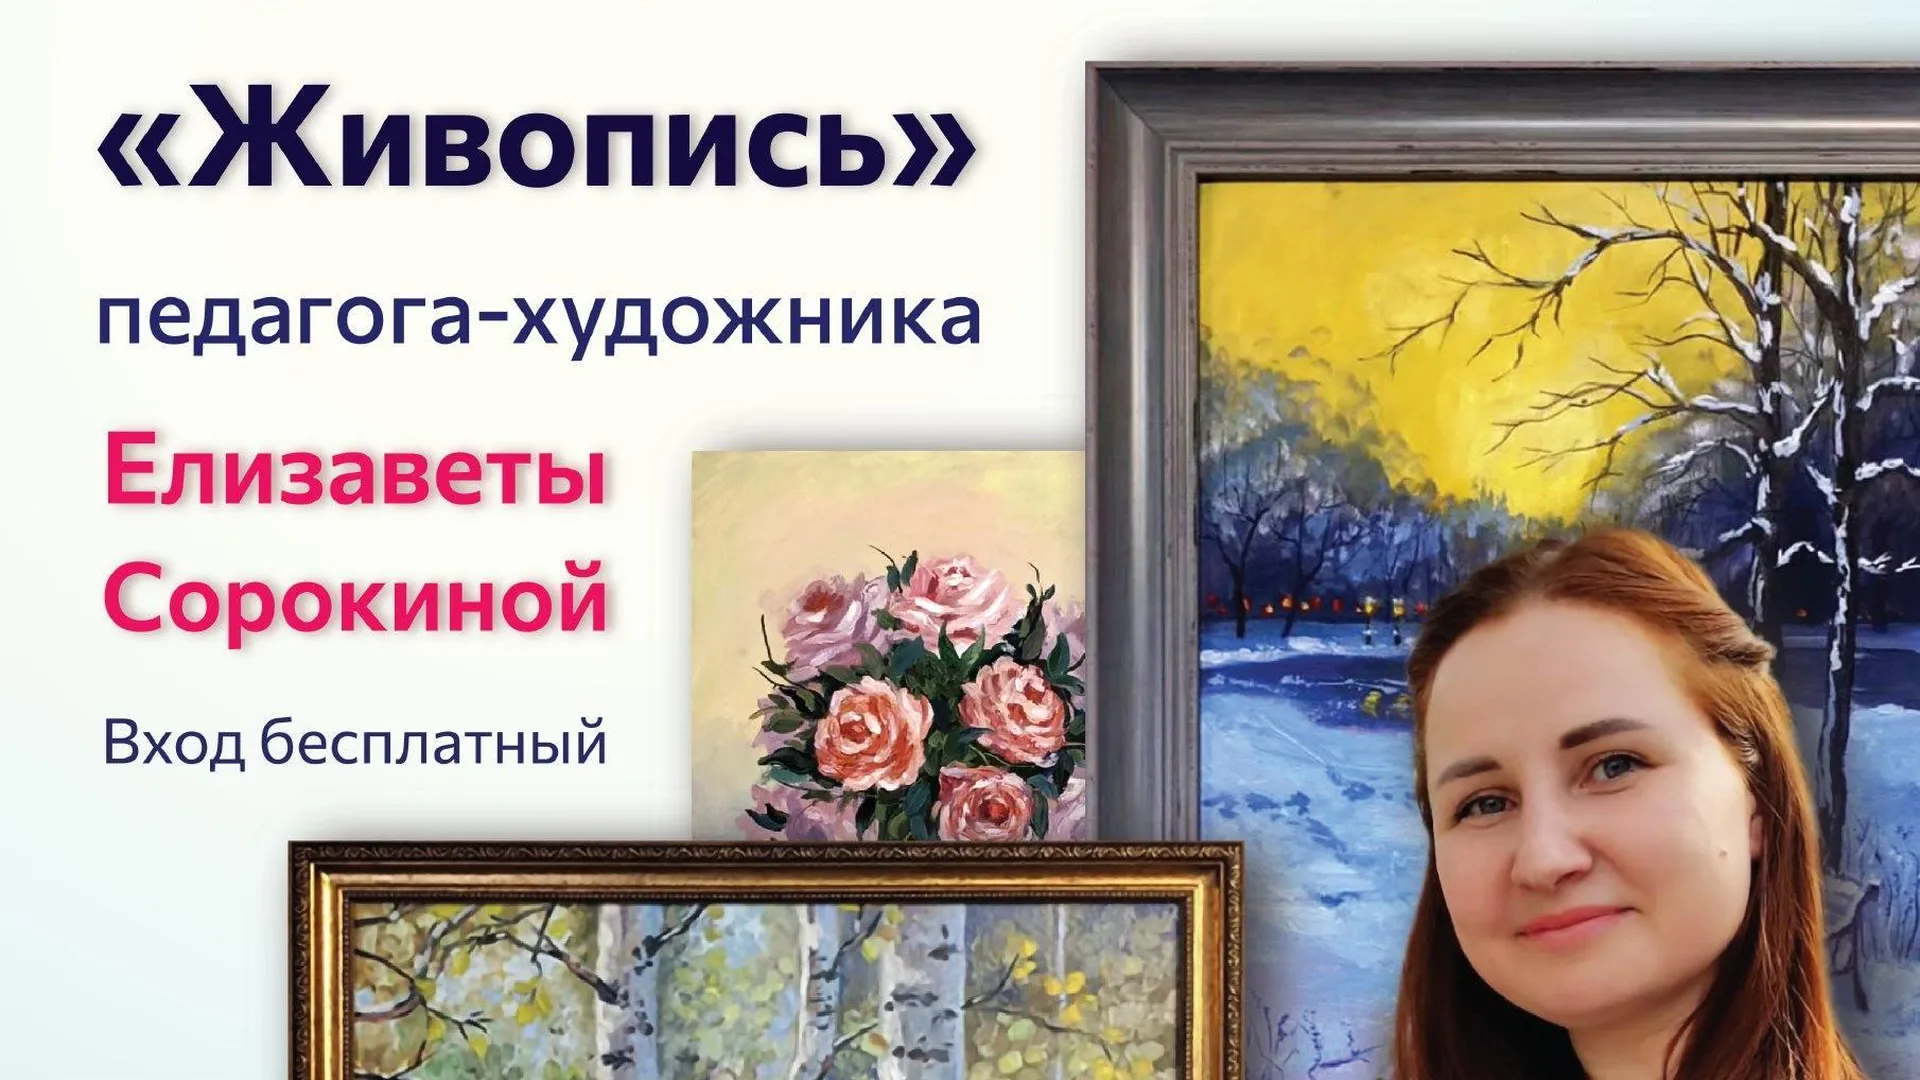 В Ногинске 24 марта откроется выставка работ педагога‑художника Елизаветы Сорокиной